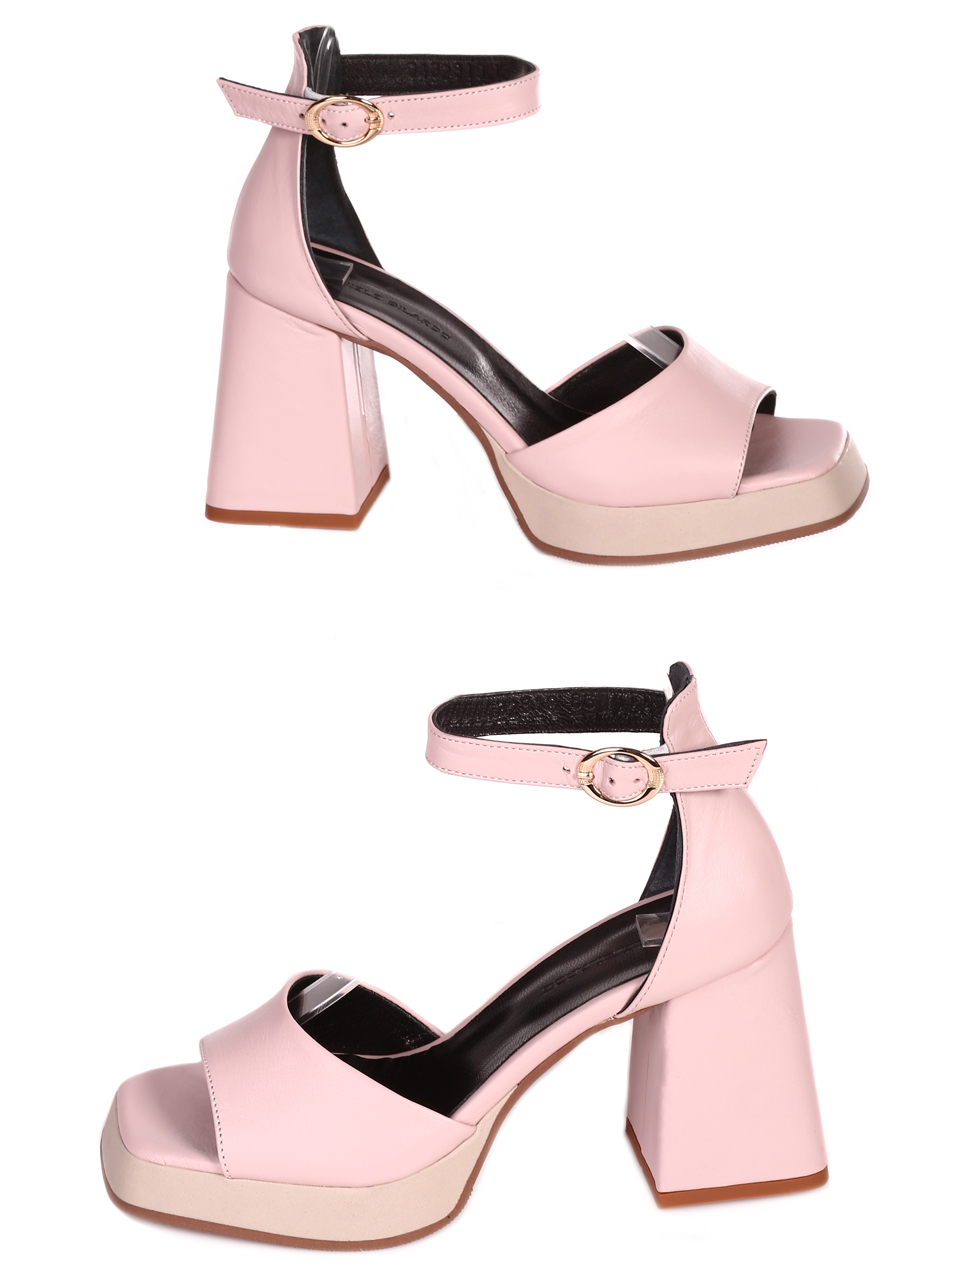 Елегантни дамски сандали на ток от естествена кожа 4AT-23287 pink